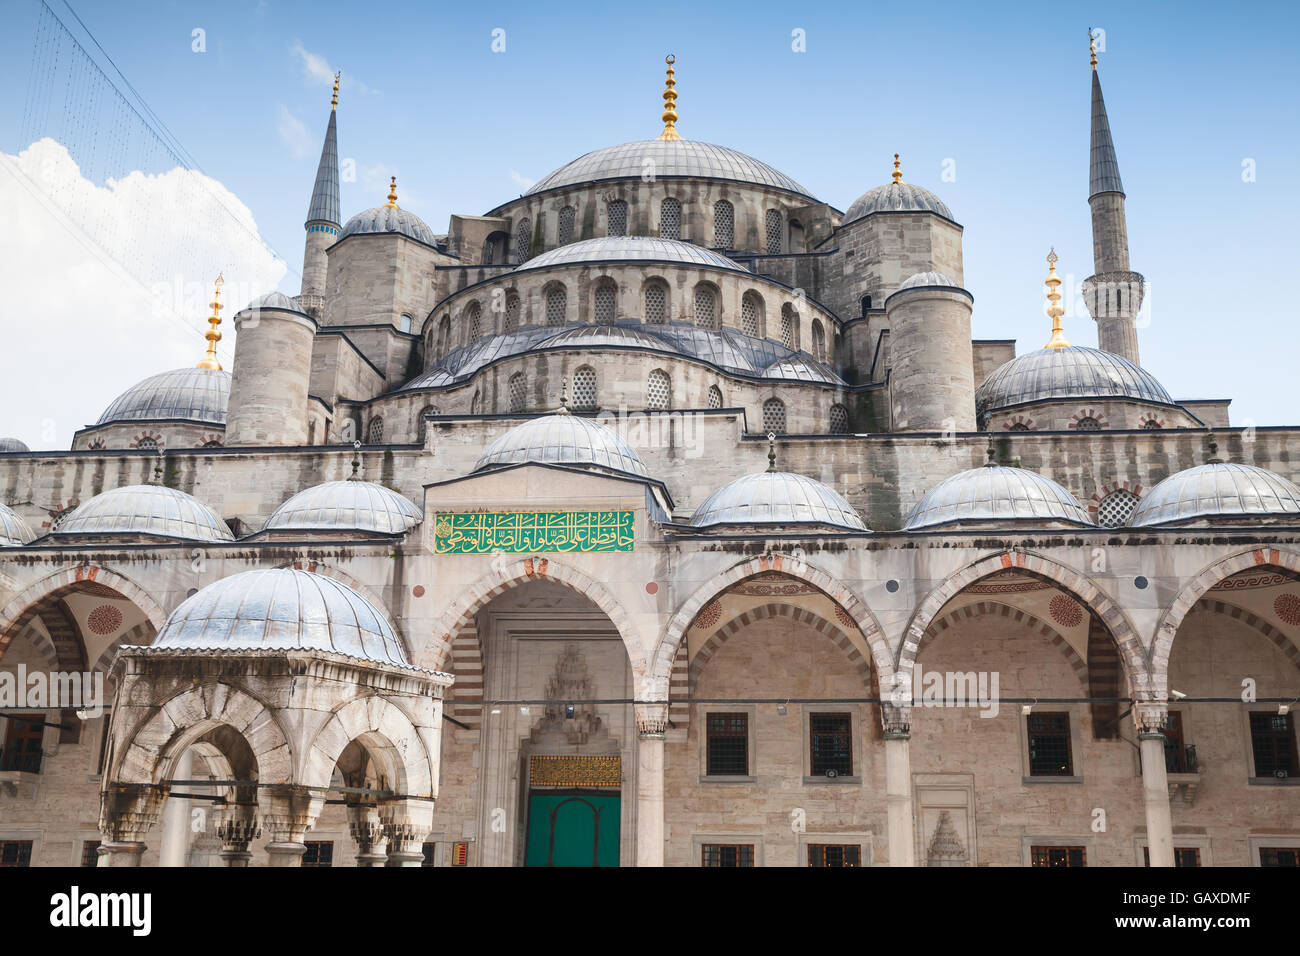 La facciata della Moschea Blu o di Sultan Ahmed moschea, è una moschea storica si trova a Istanbul, in Turchia, una delle città più popolari Foto Stock